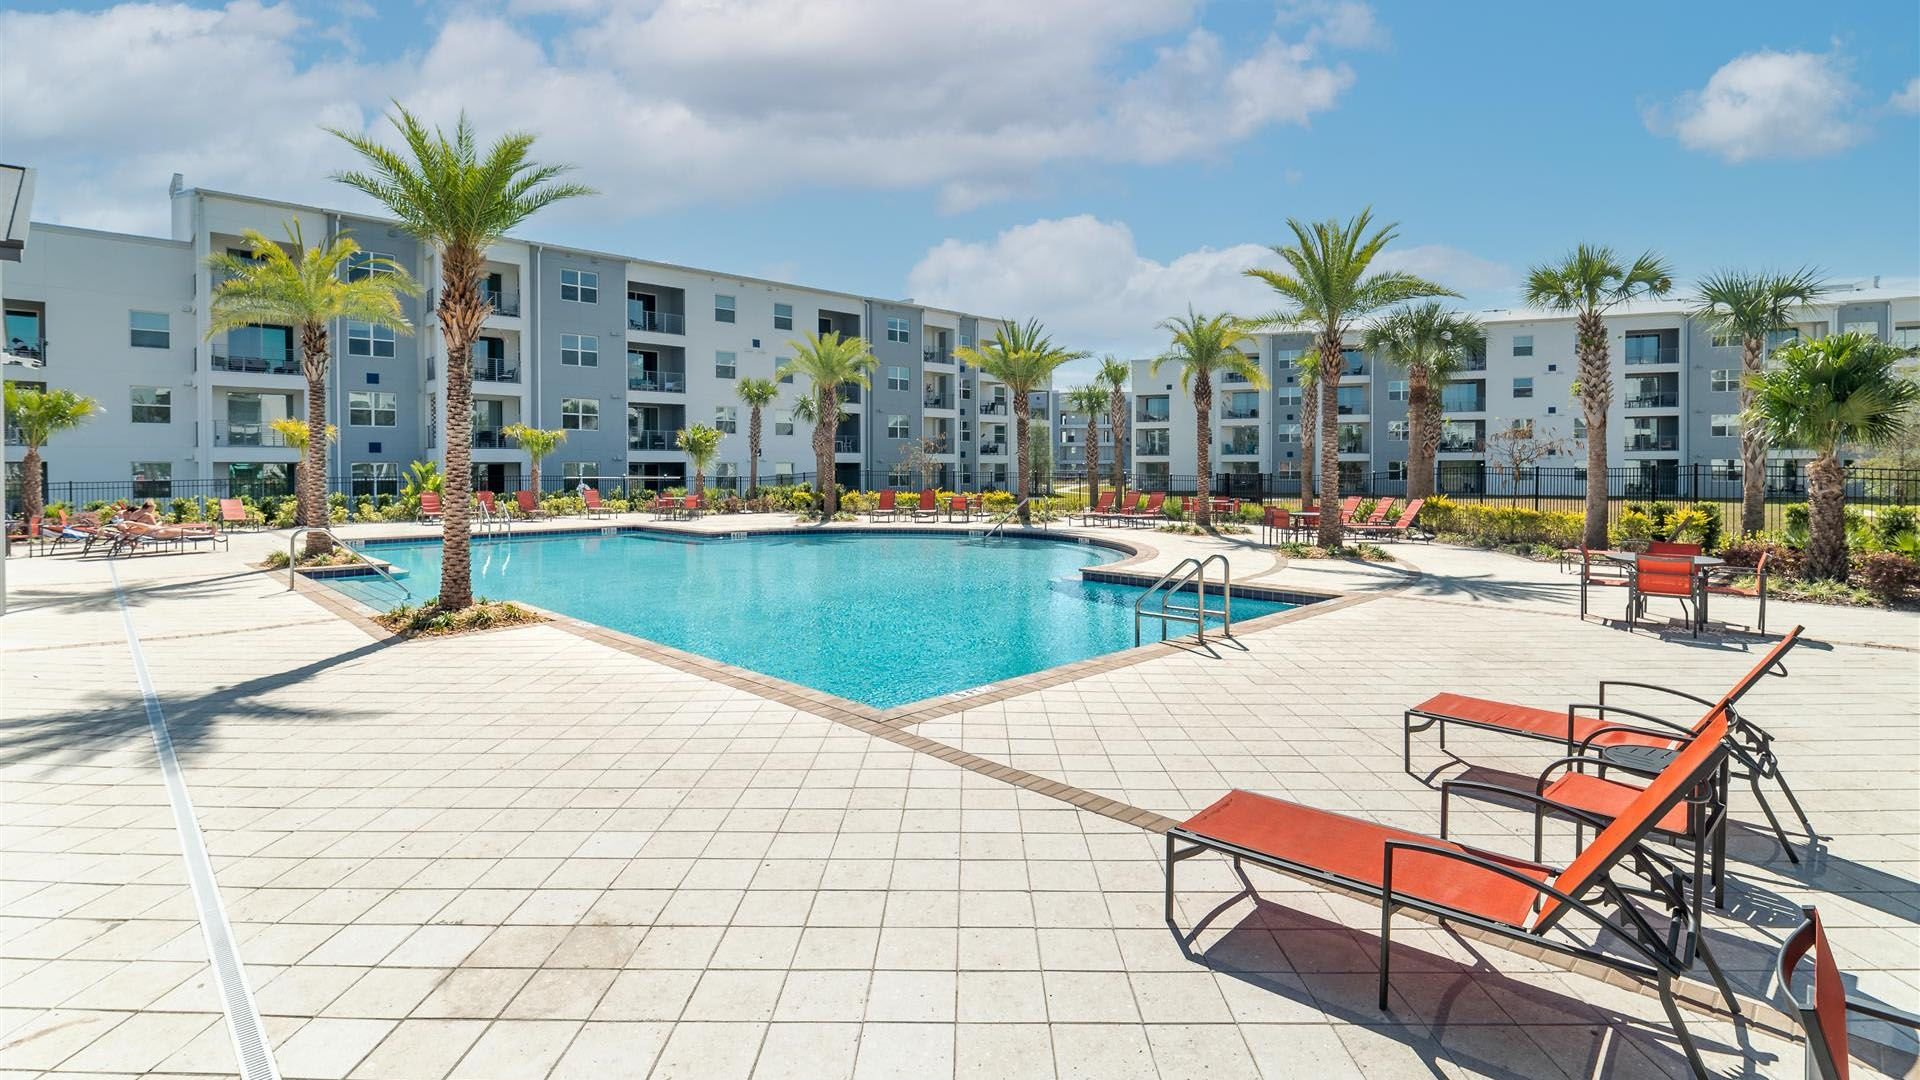 Condominium Section - Resort Pool